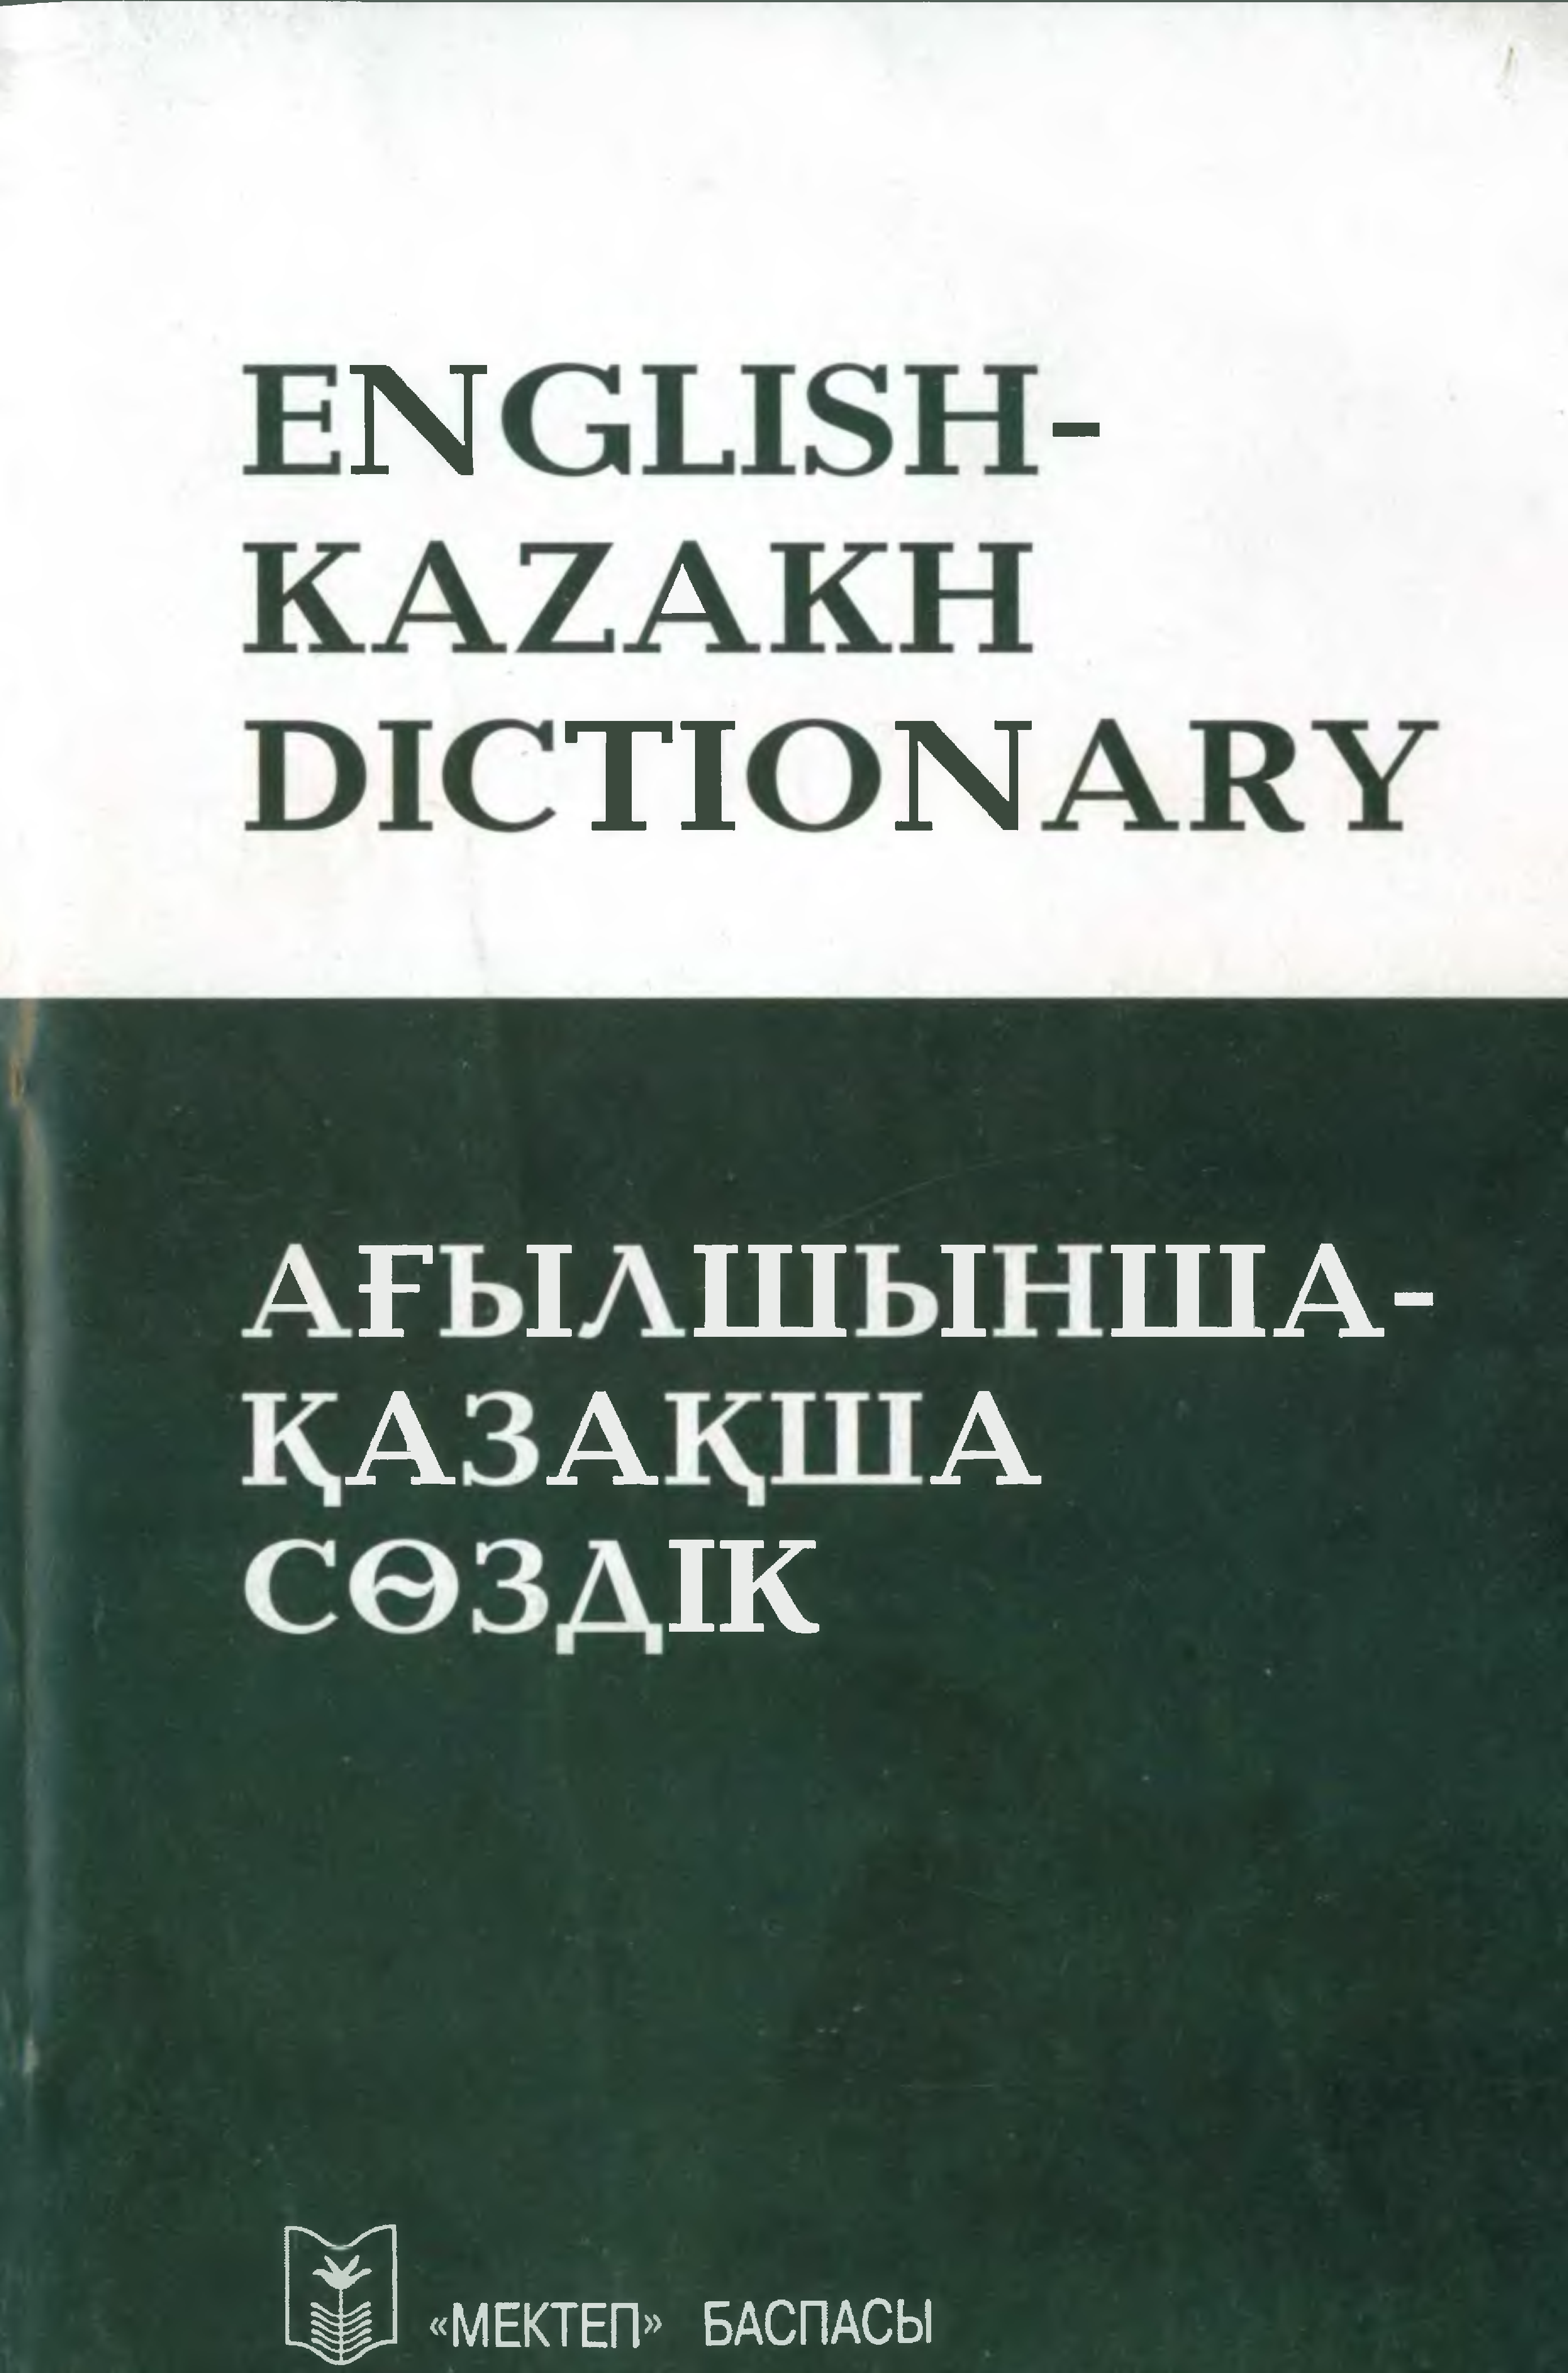 переводчик с английского на казахский по фотографии